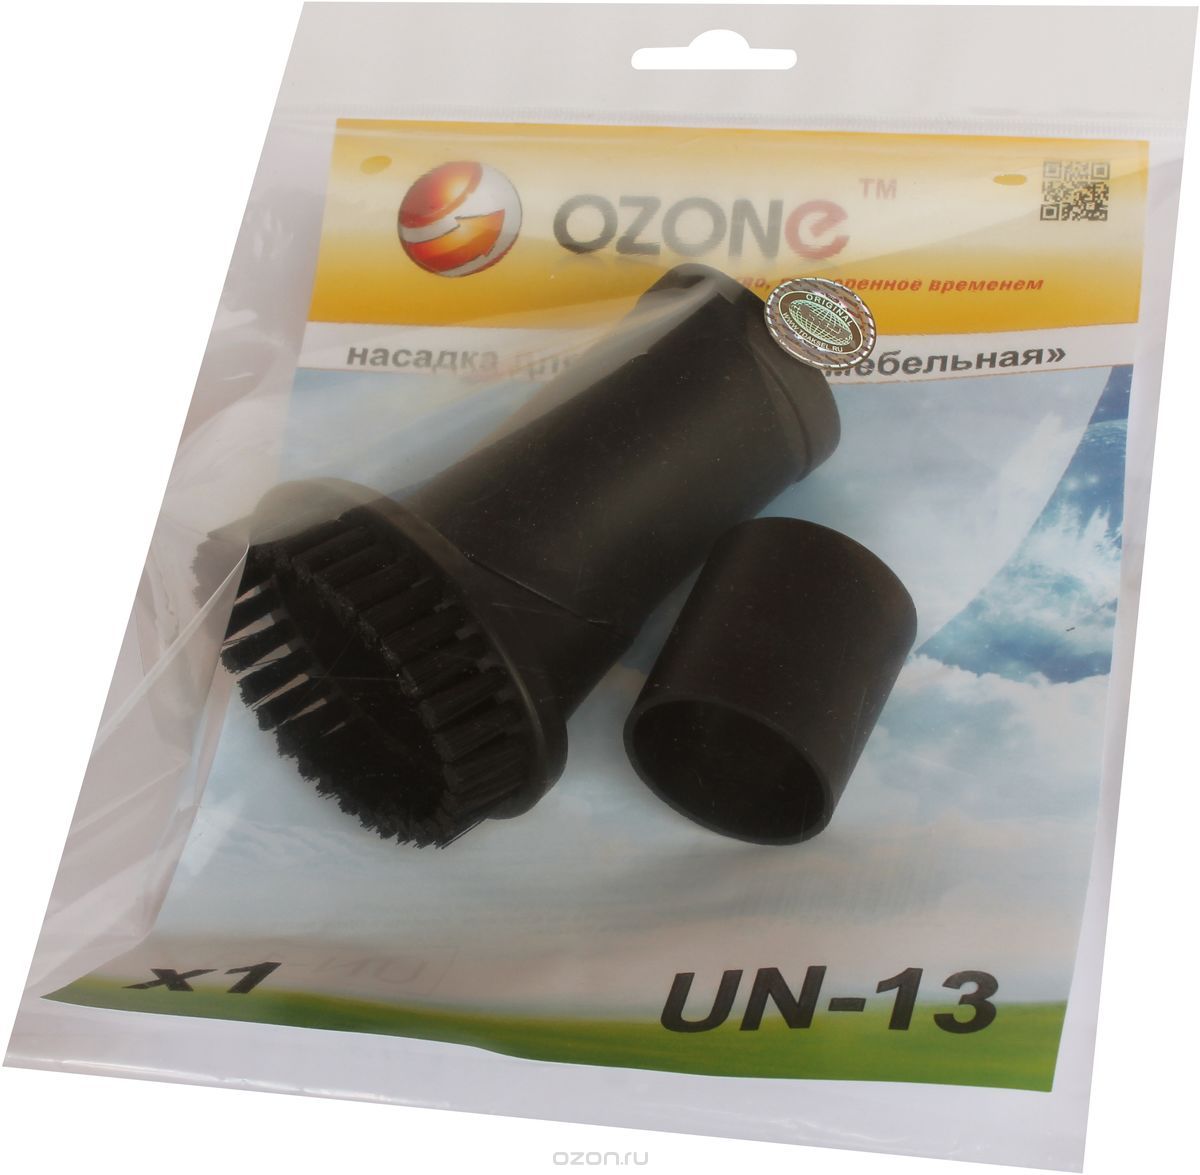 Ozone UN-13  